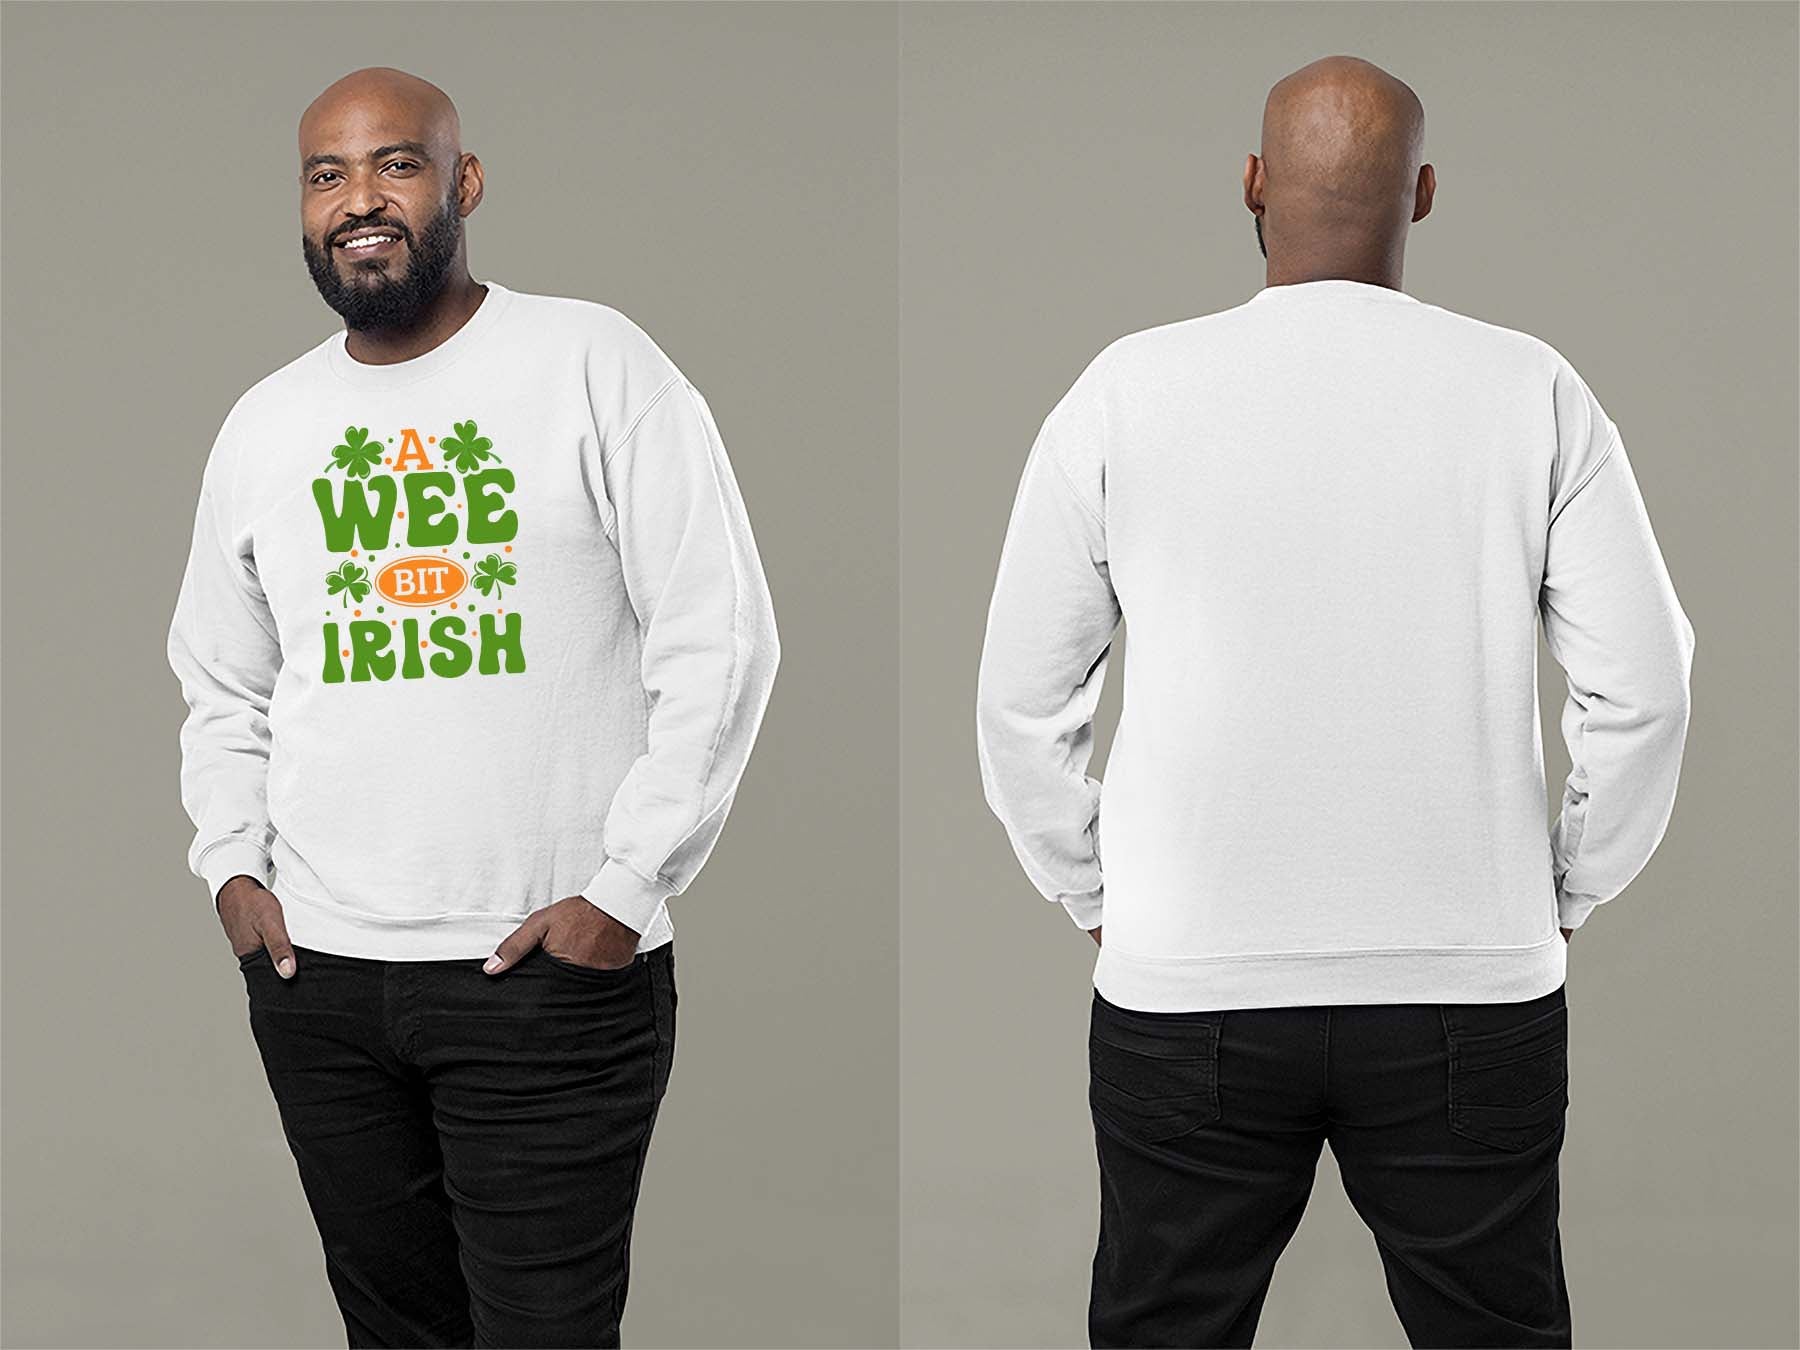 A Wee Bit Irish Sweatshirt Small White